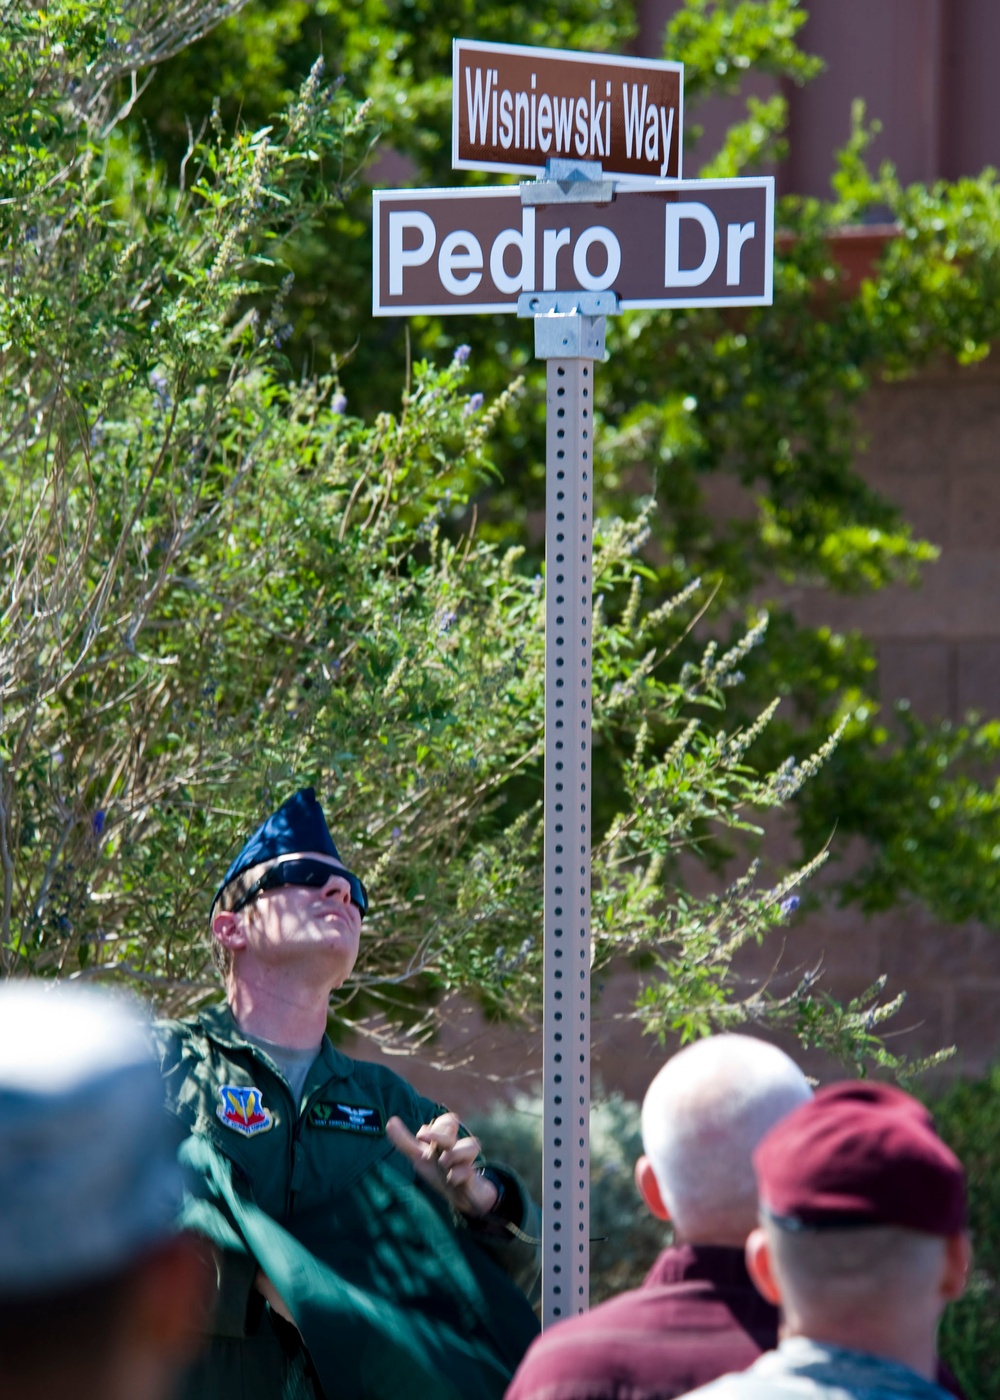 PEDRO66 street renaming